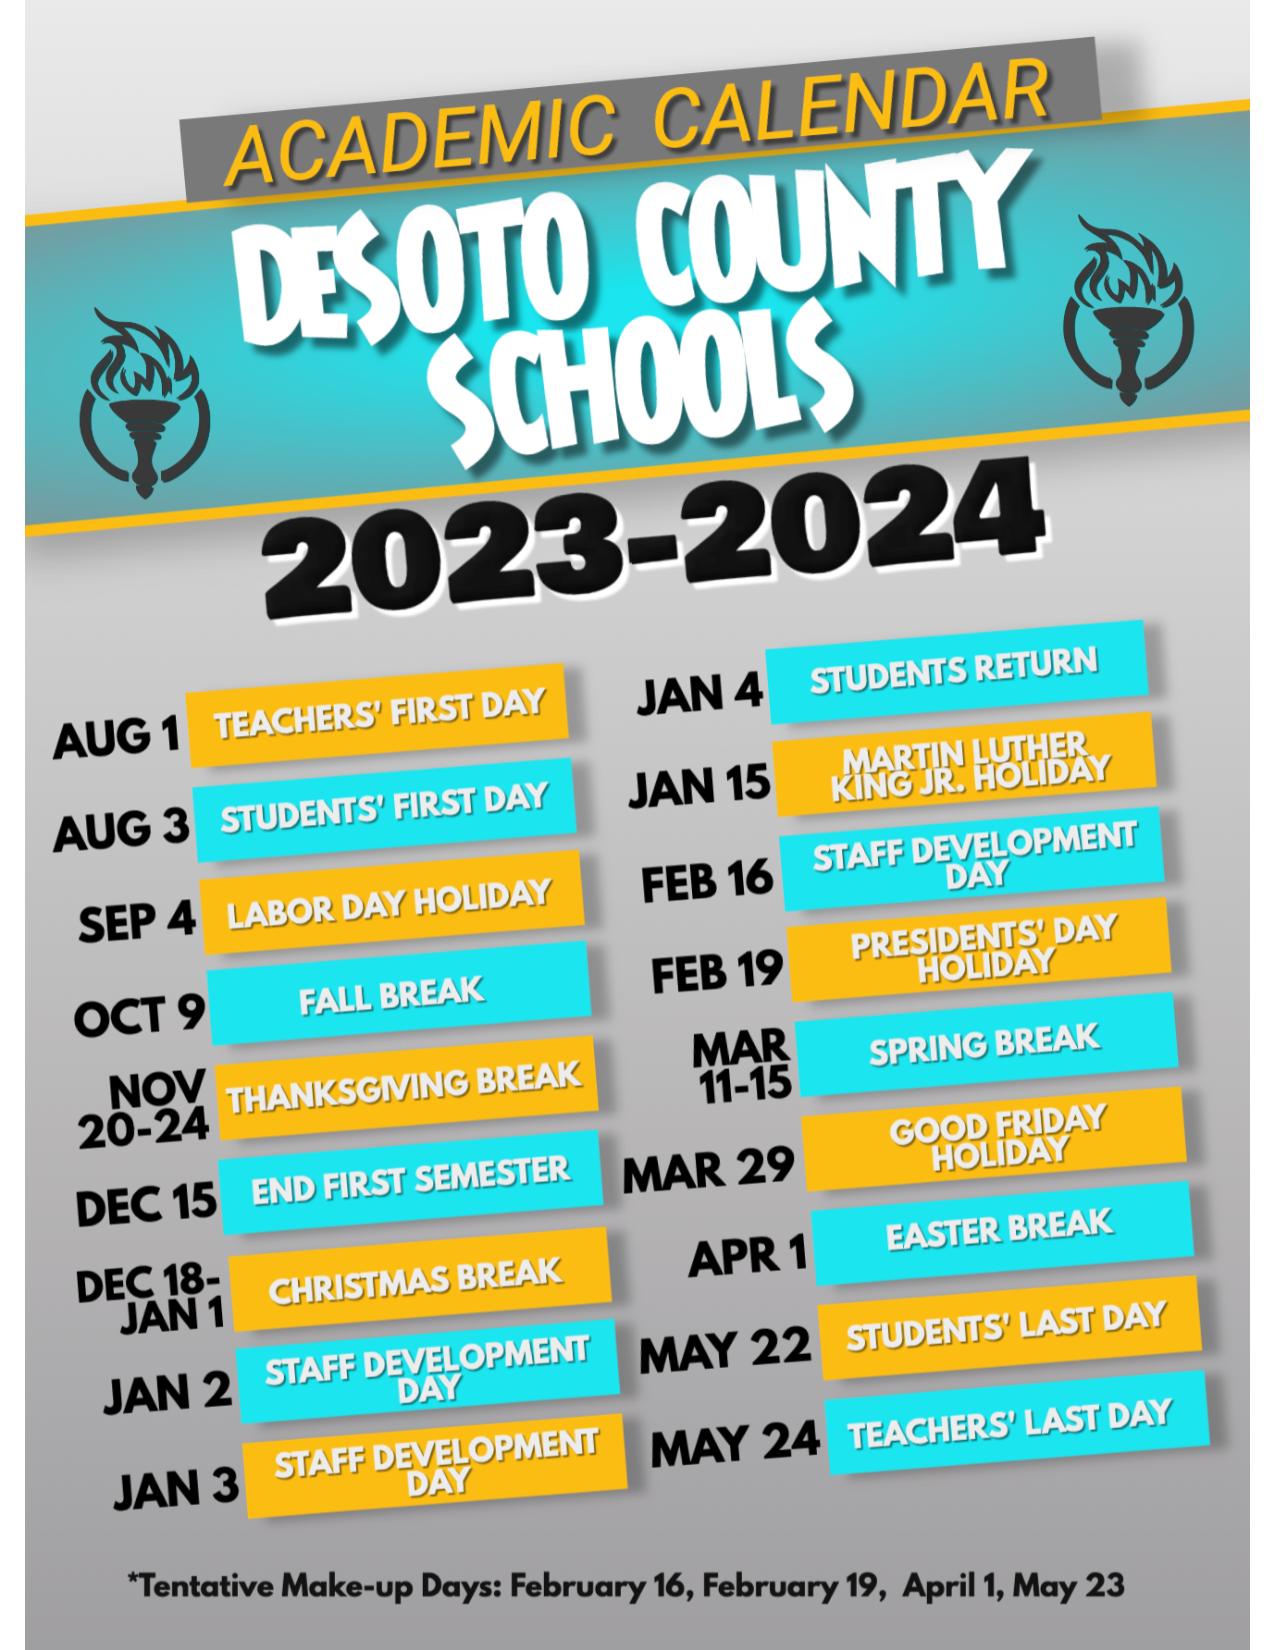 desoto-county-schools-calendar-2023-2024-holiday-breaks